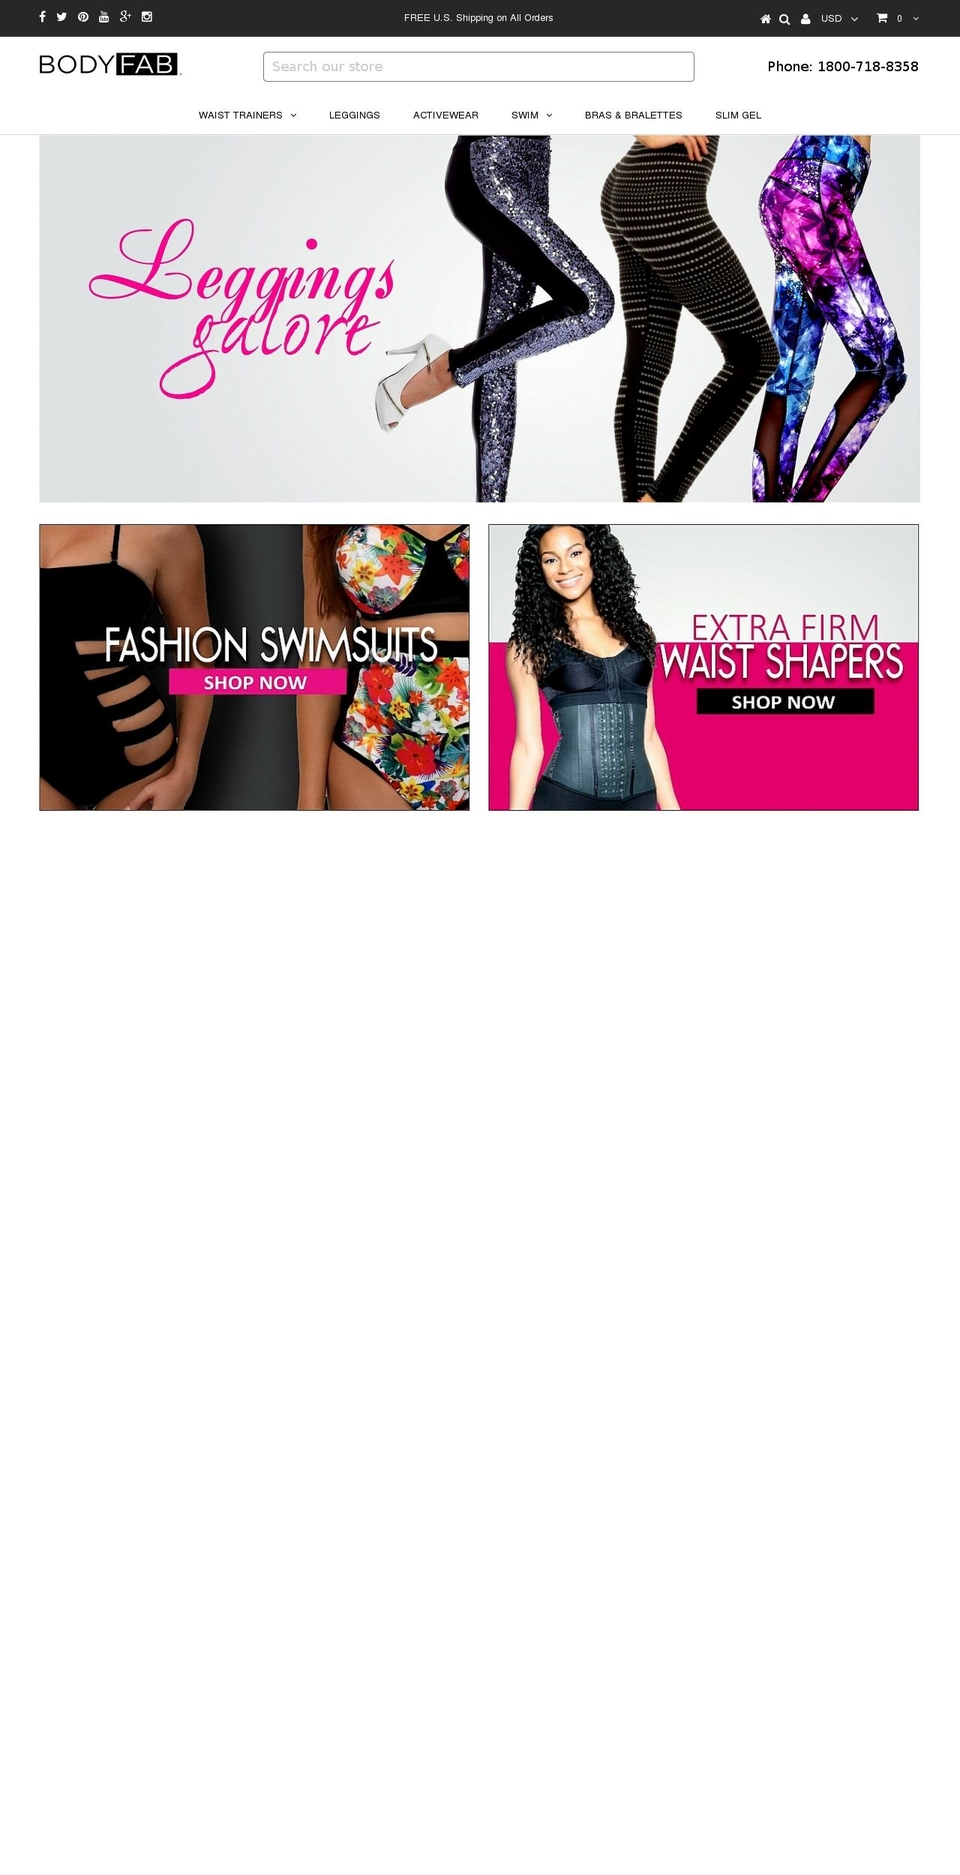 bodyfab.com shopify website screenshot